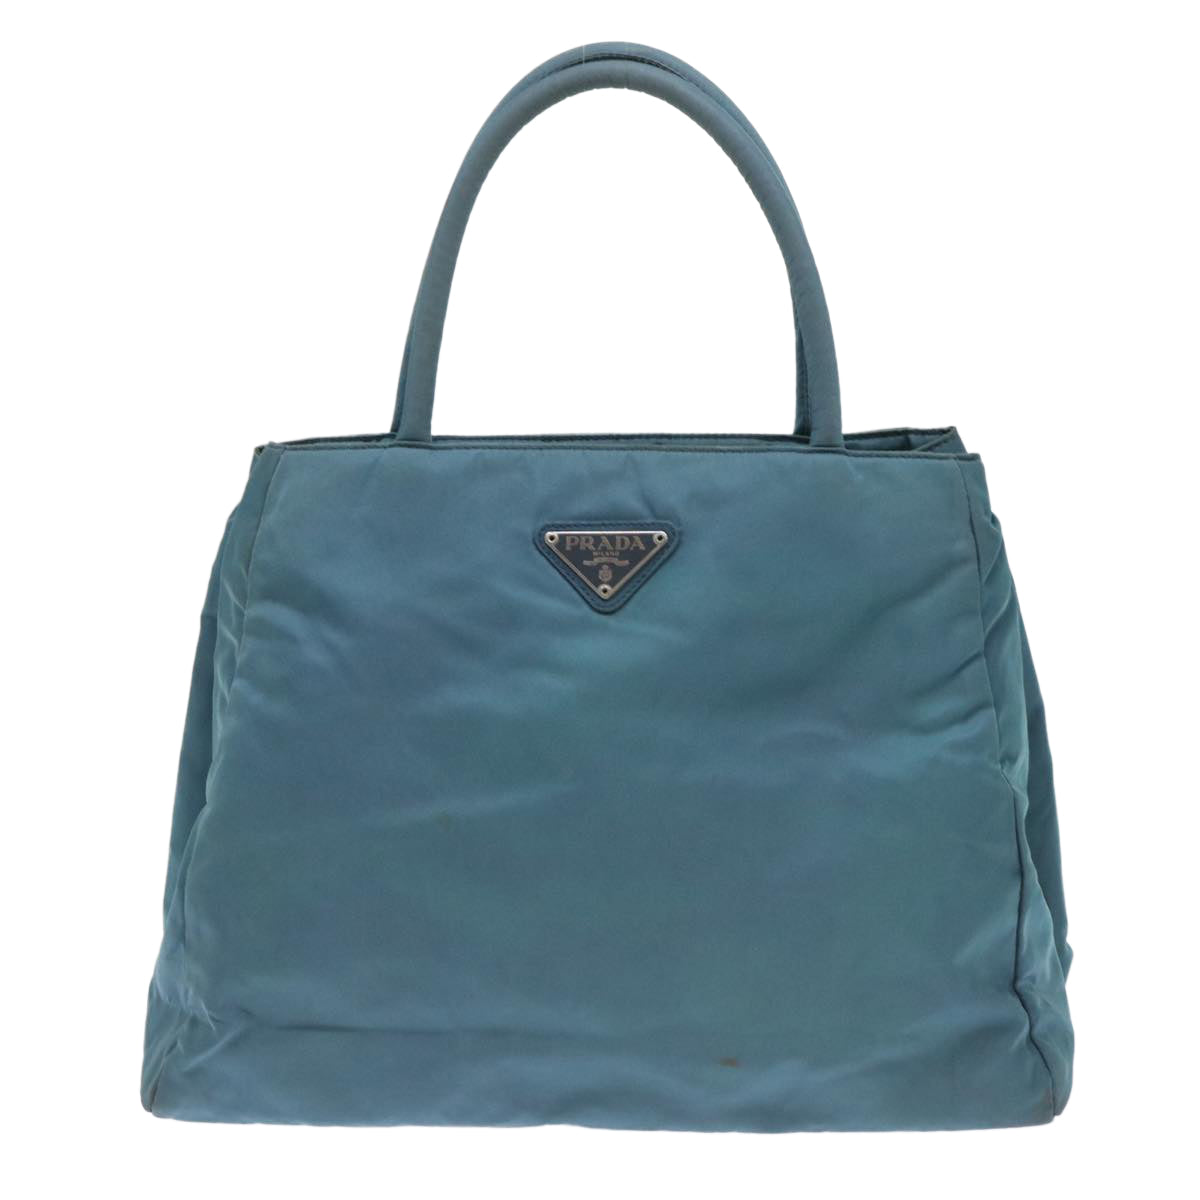 PRADA Hand Bag Nylon Blue Auth cl714 - 0